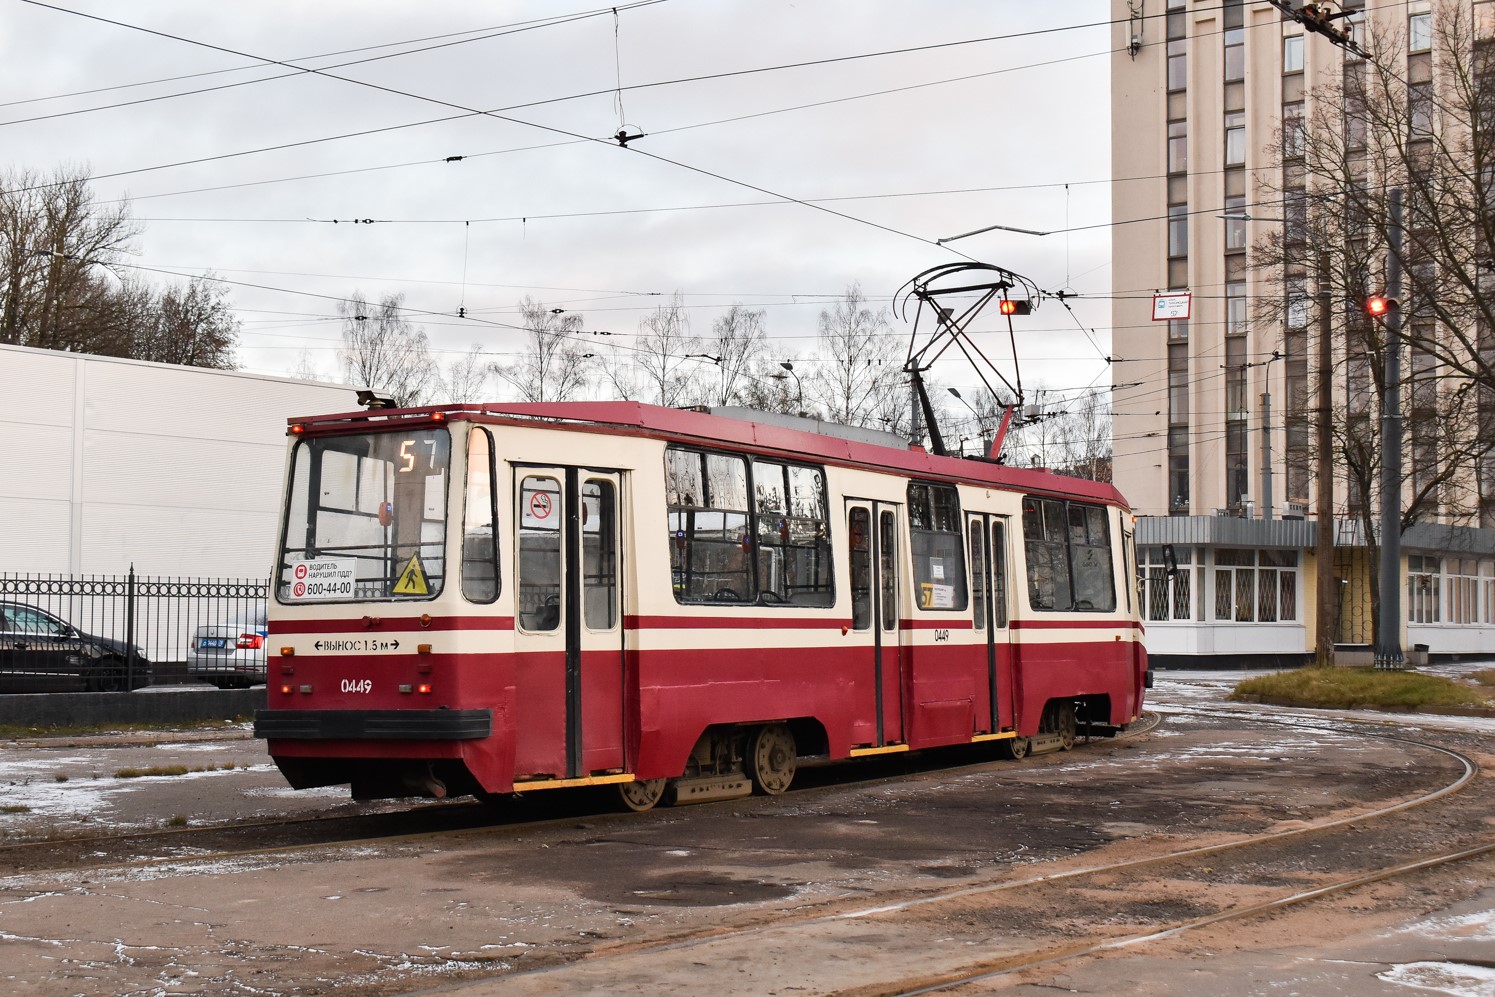 Saint-Petersburg, 71-134K (LM-99K) № 0449